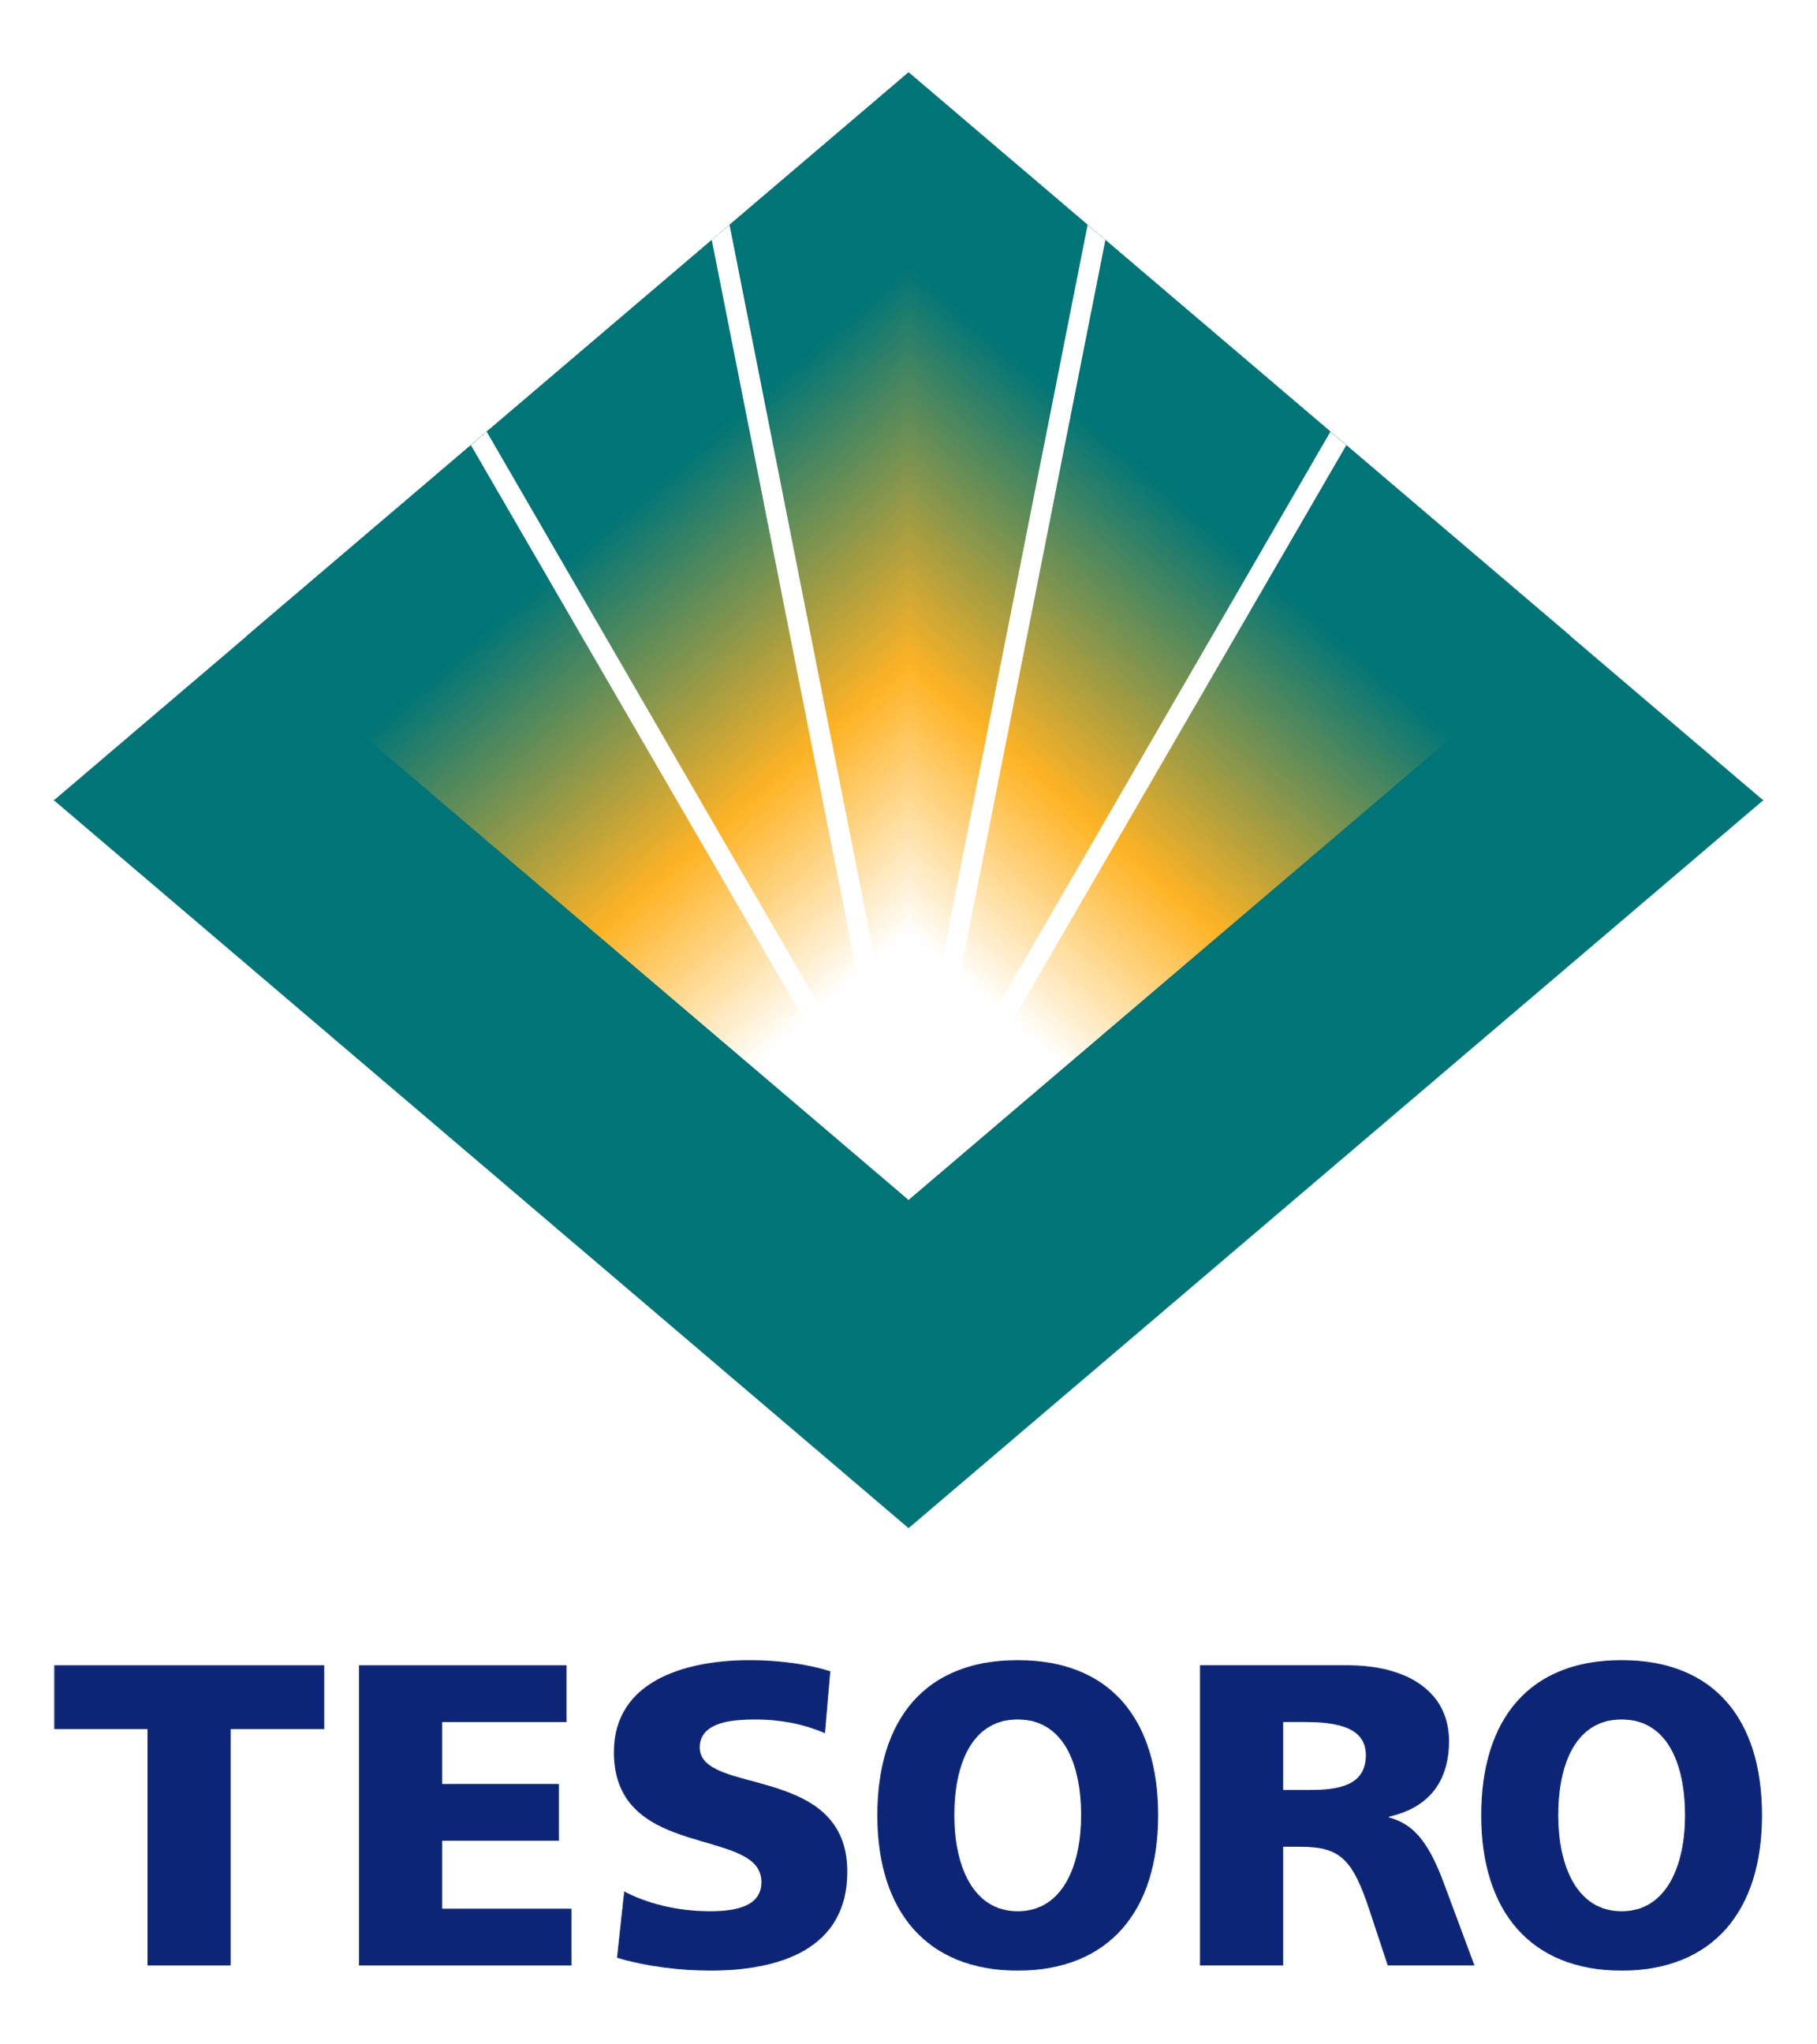 Tesoro Logo - Tesoro Logo PNG Image. Free transparent CC0 PNG Image Library